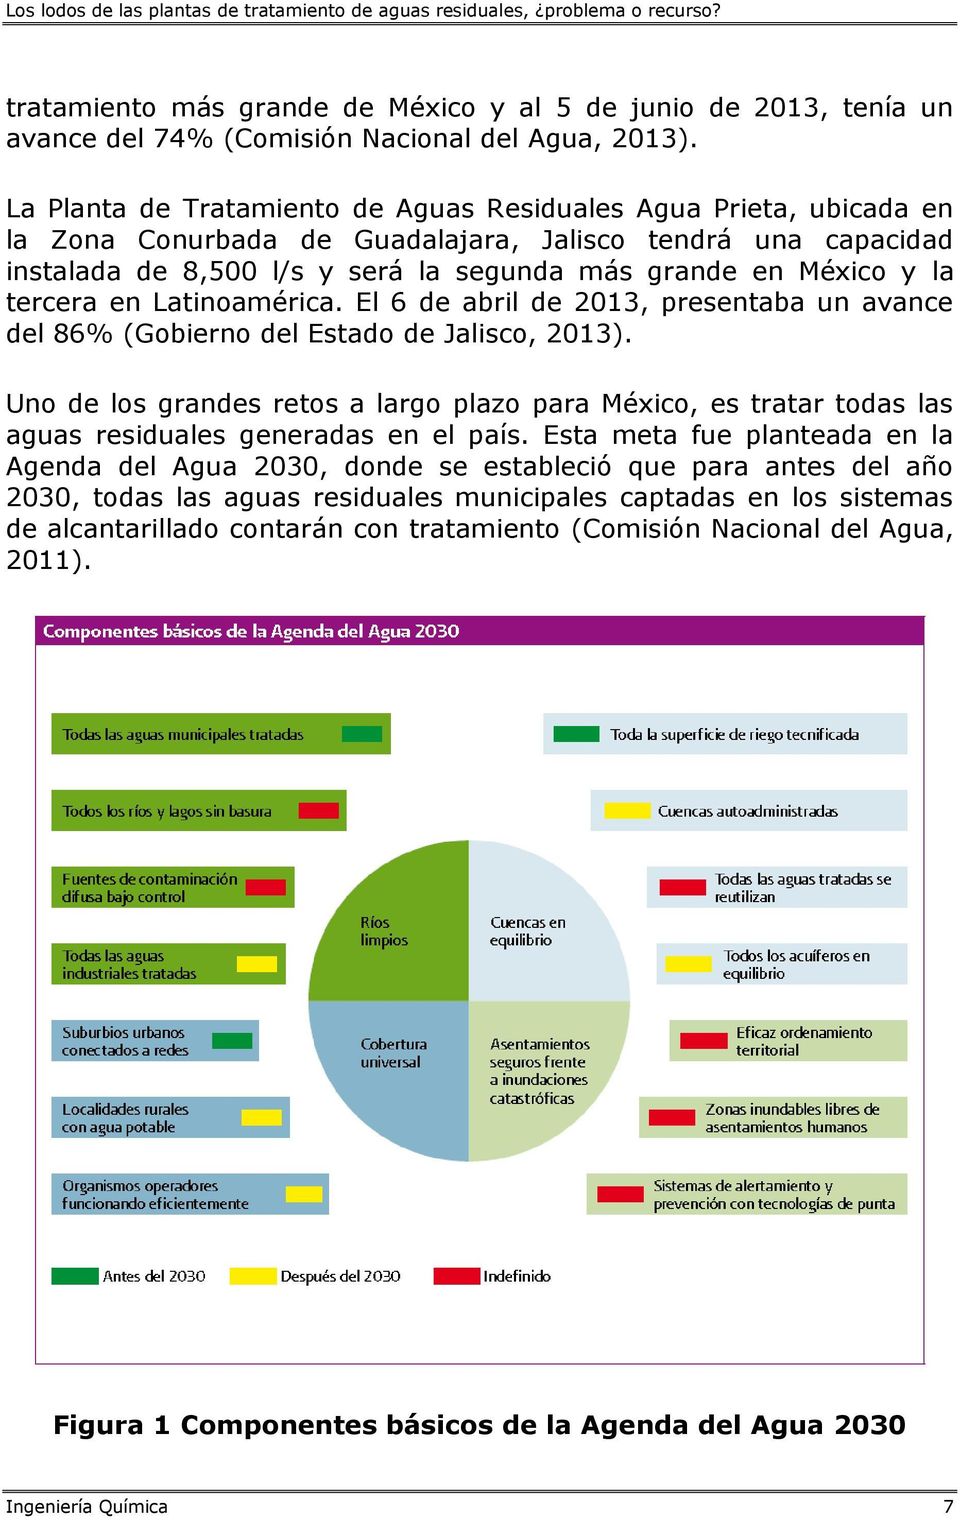 tercera en Latinoamérica. El 6 de abril de 2013, presentaba un avance del 86% (Gobierno del Estado de Jalisco, 2013).